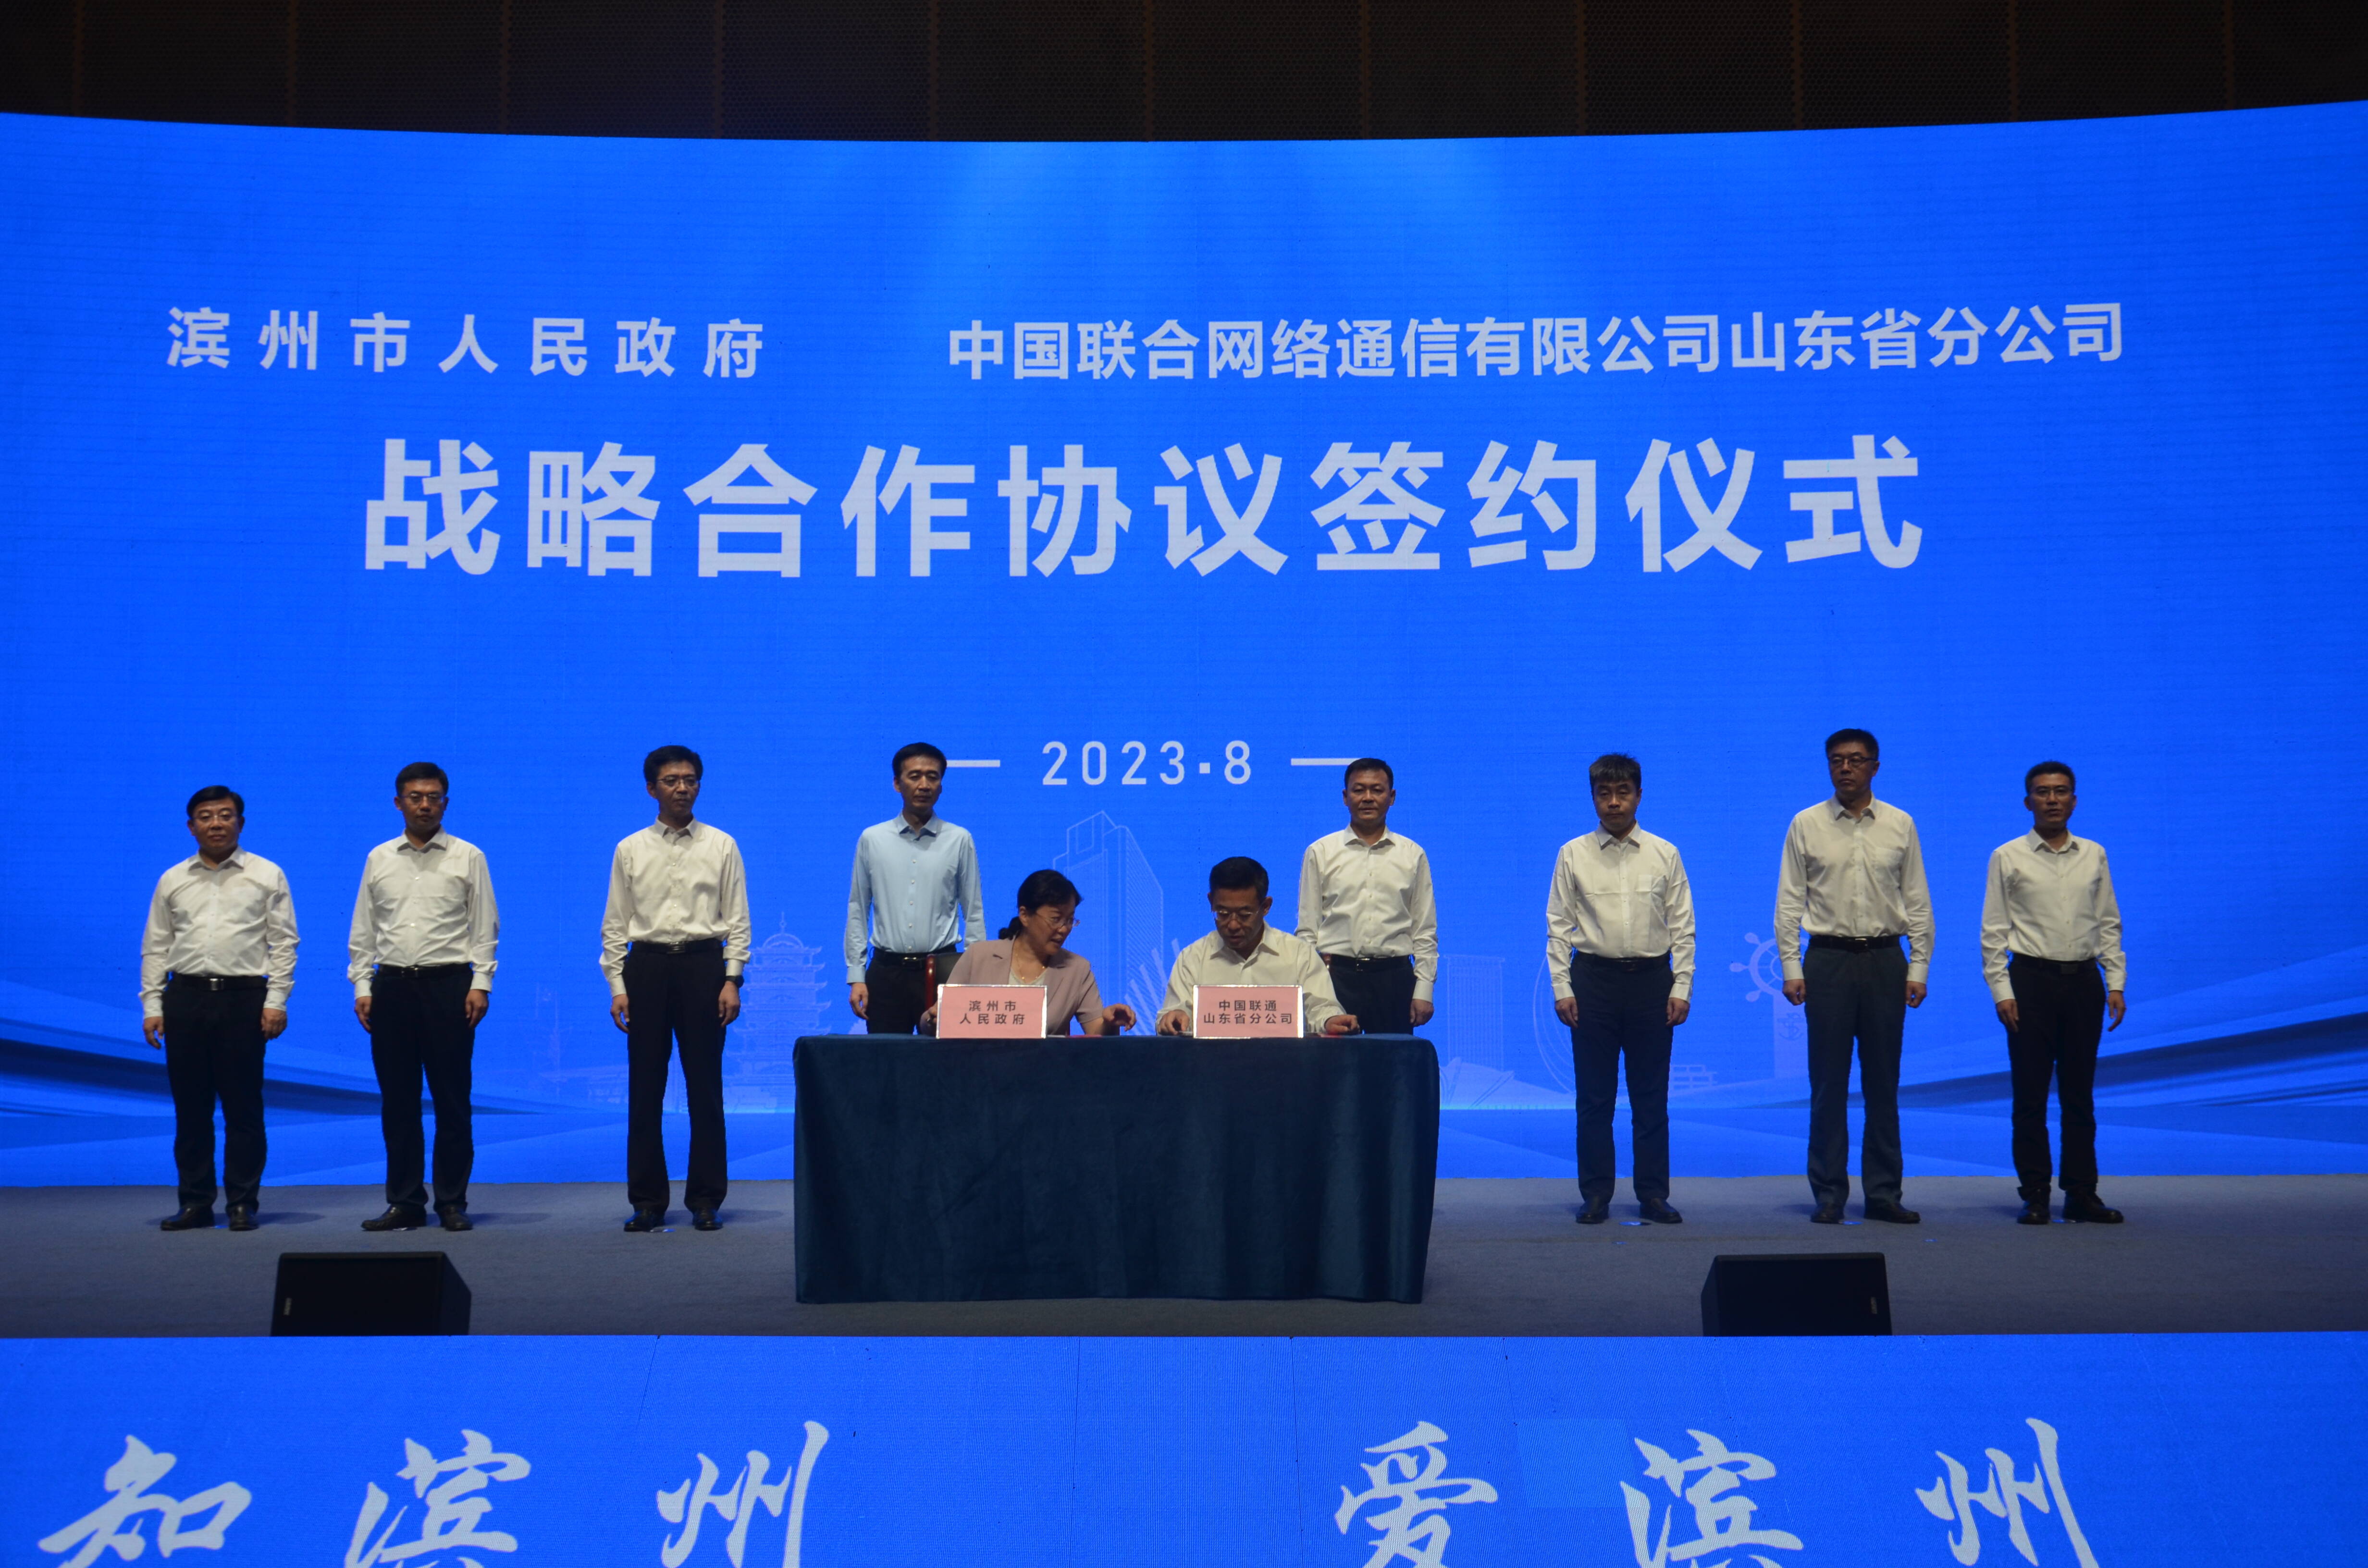 滨州市人民政府与中国联通山东省分公司签署战略合作协议